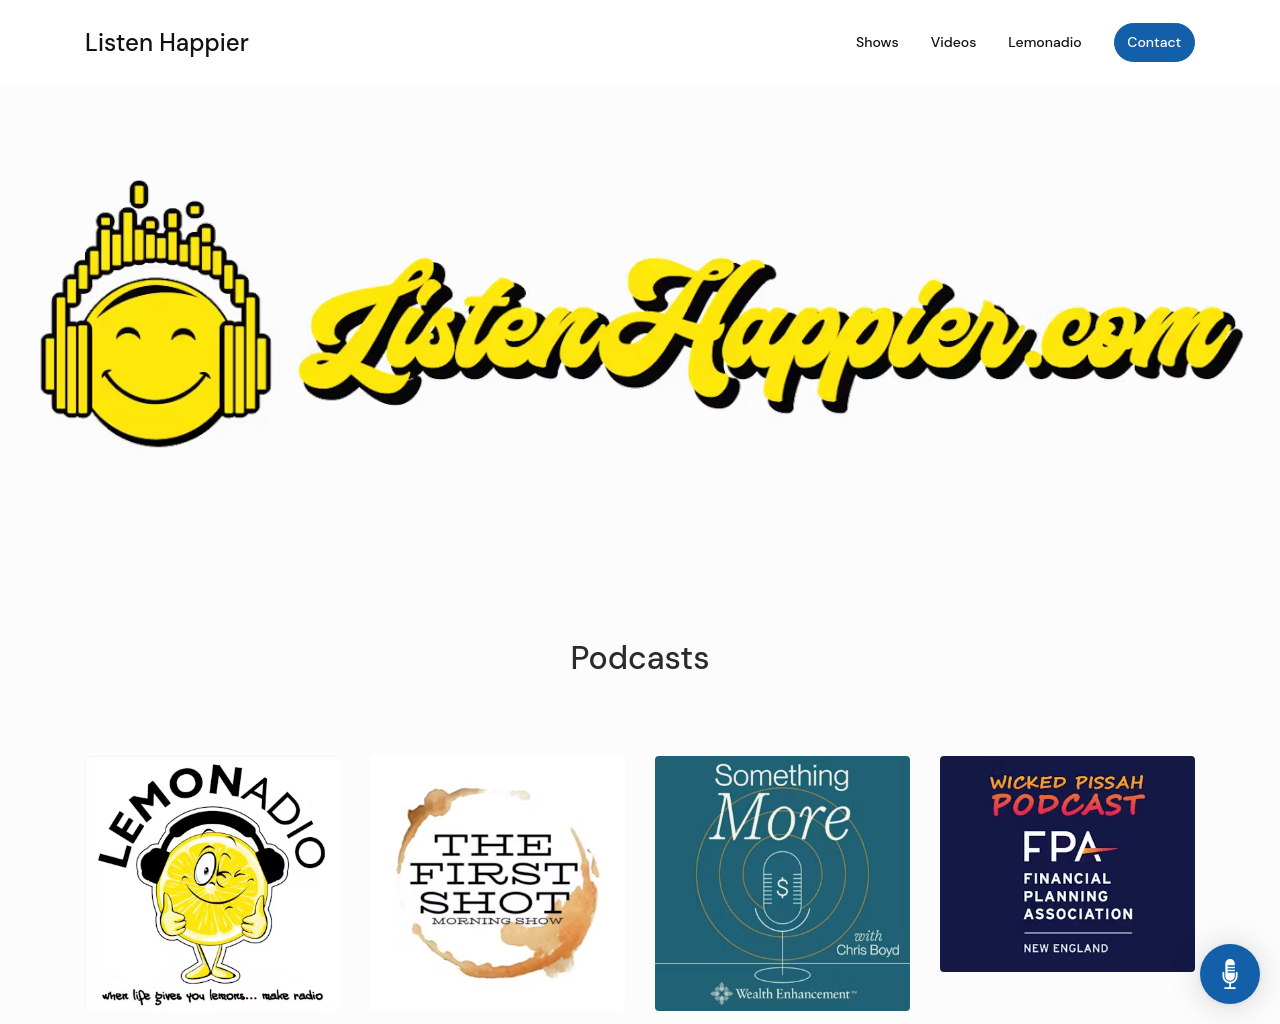 Listen Happier Website